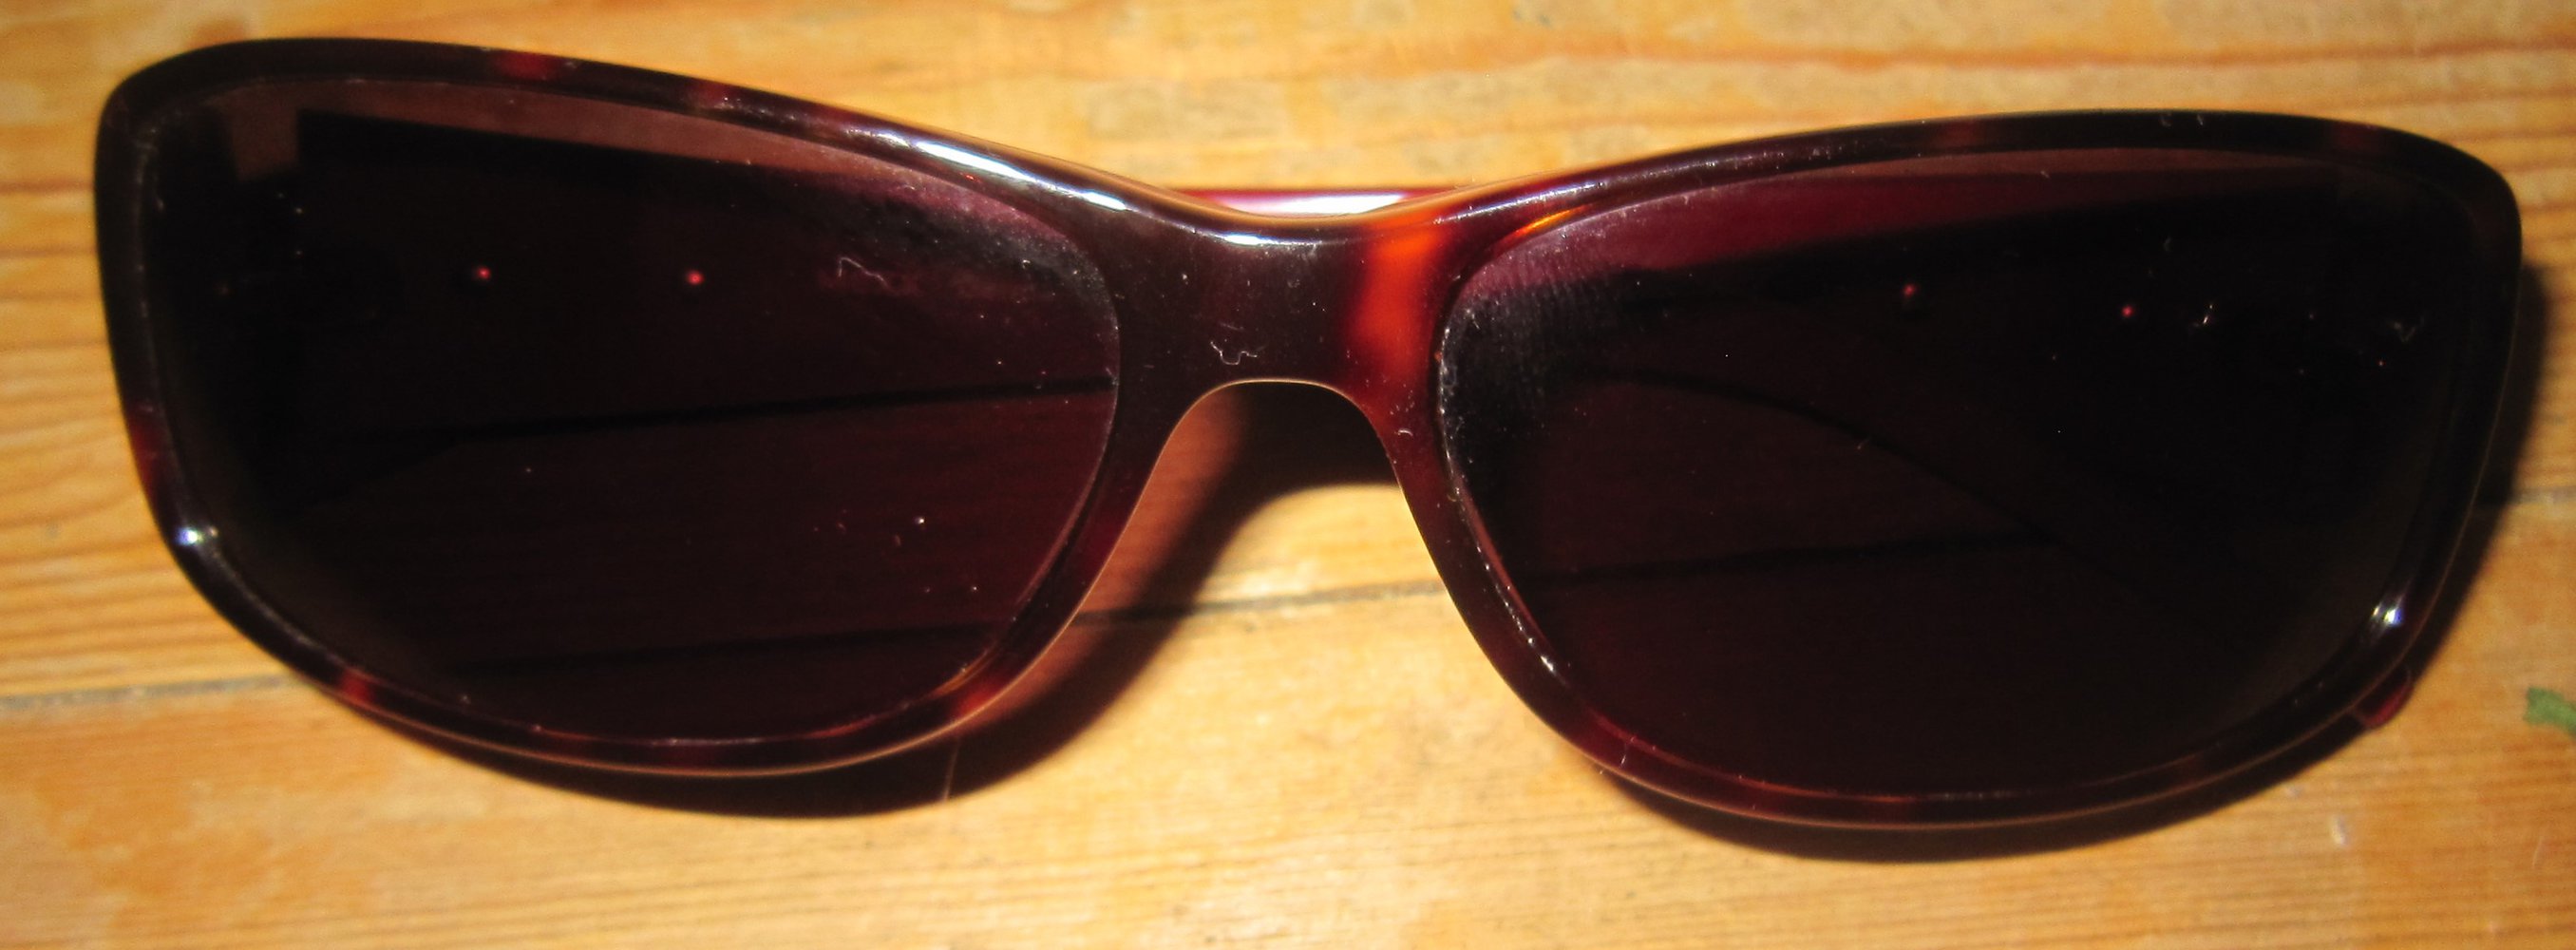 Mexx Sonnenbrille Markenbrille Mod. 6025-300 und No-Name Sonnenbrille